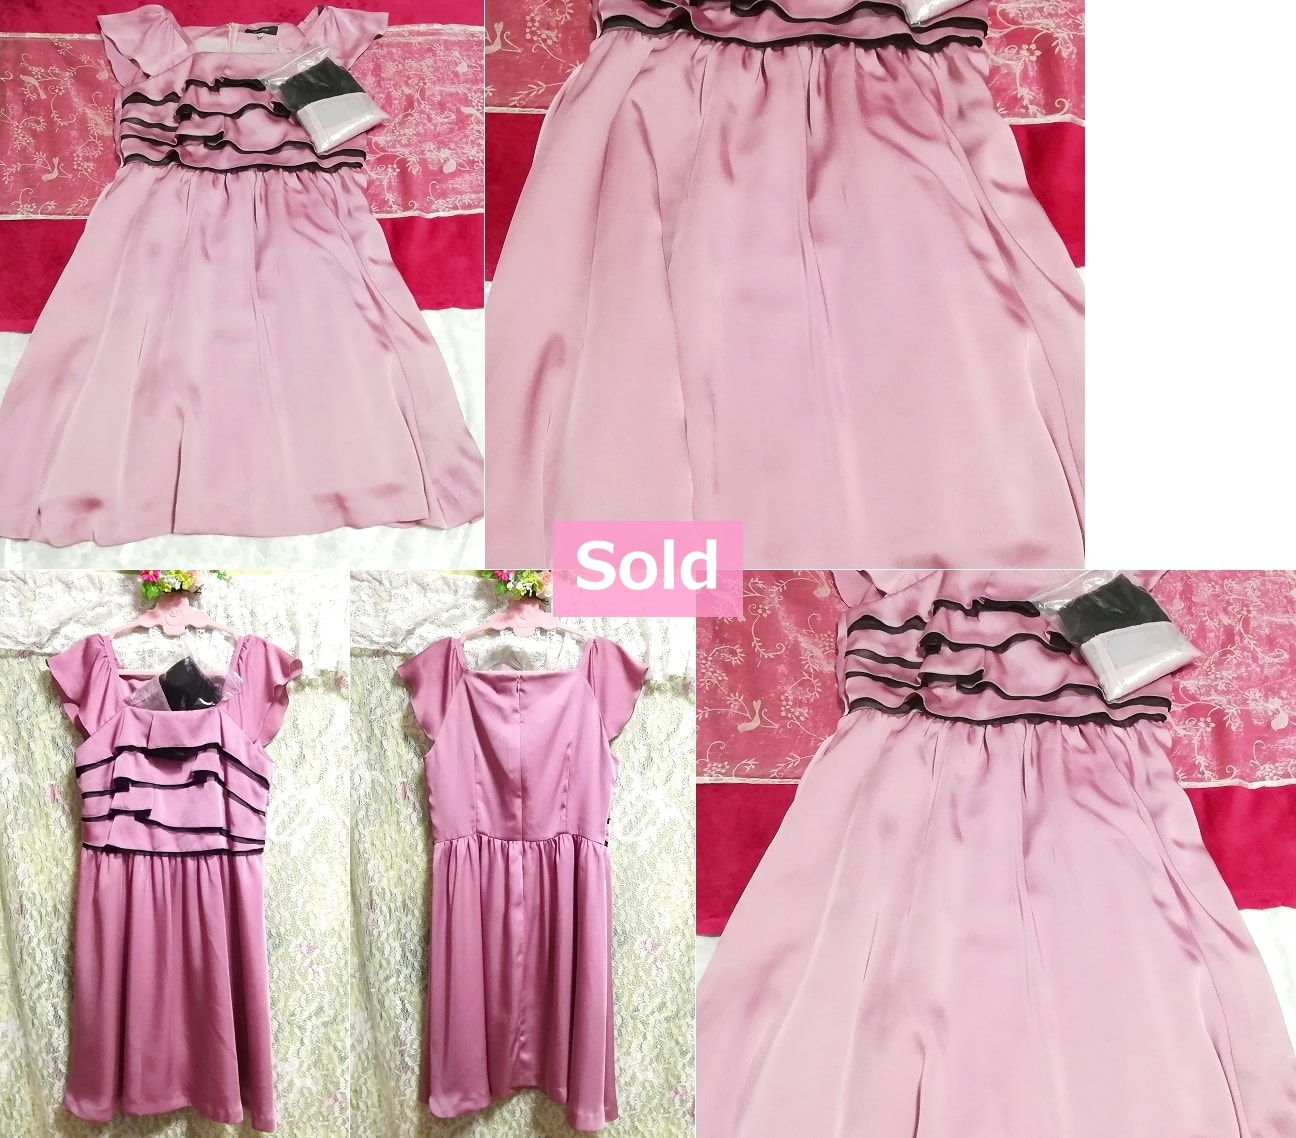 Пурпурно-розовая глянцевая юбка без рукавов с оборками на груди onepiece 01, платье и мини-юбка, размер M